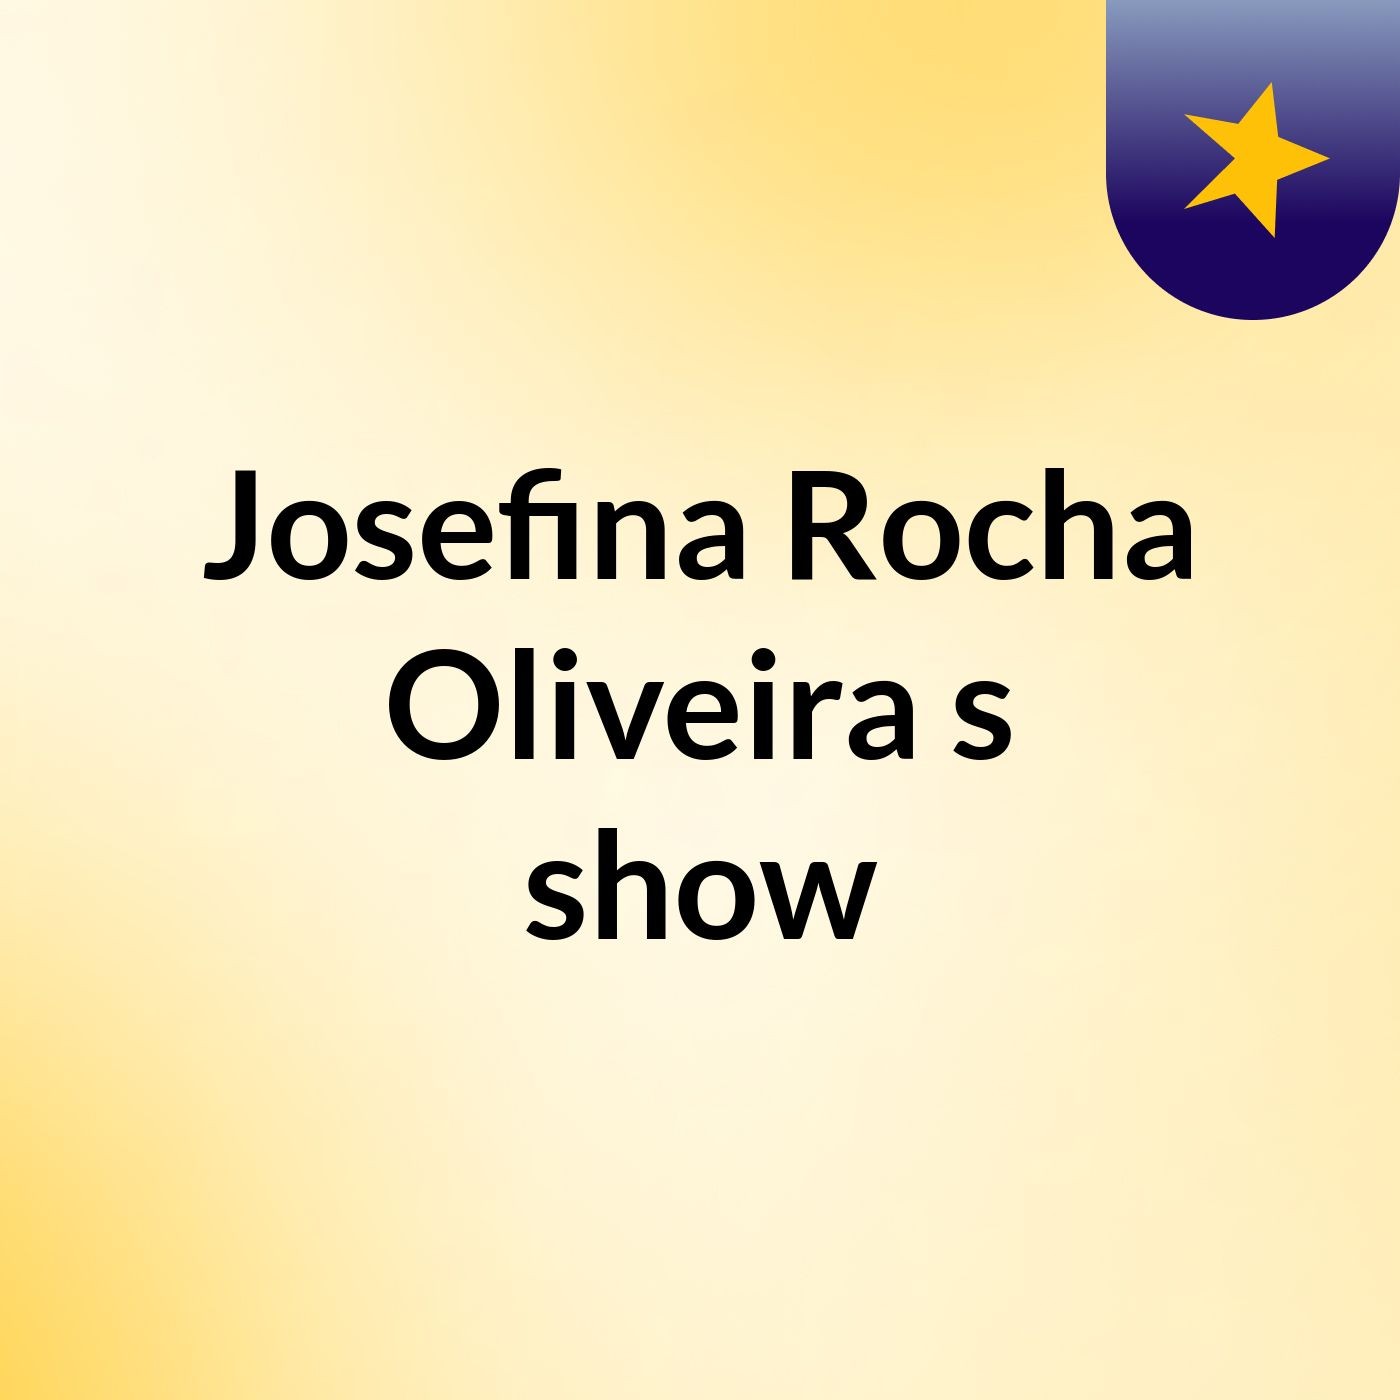 Josefina Rocha Oliveira's show